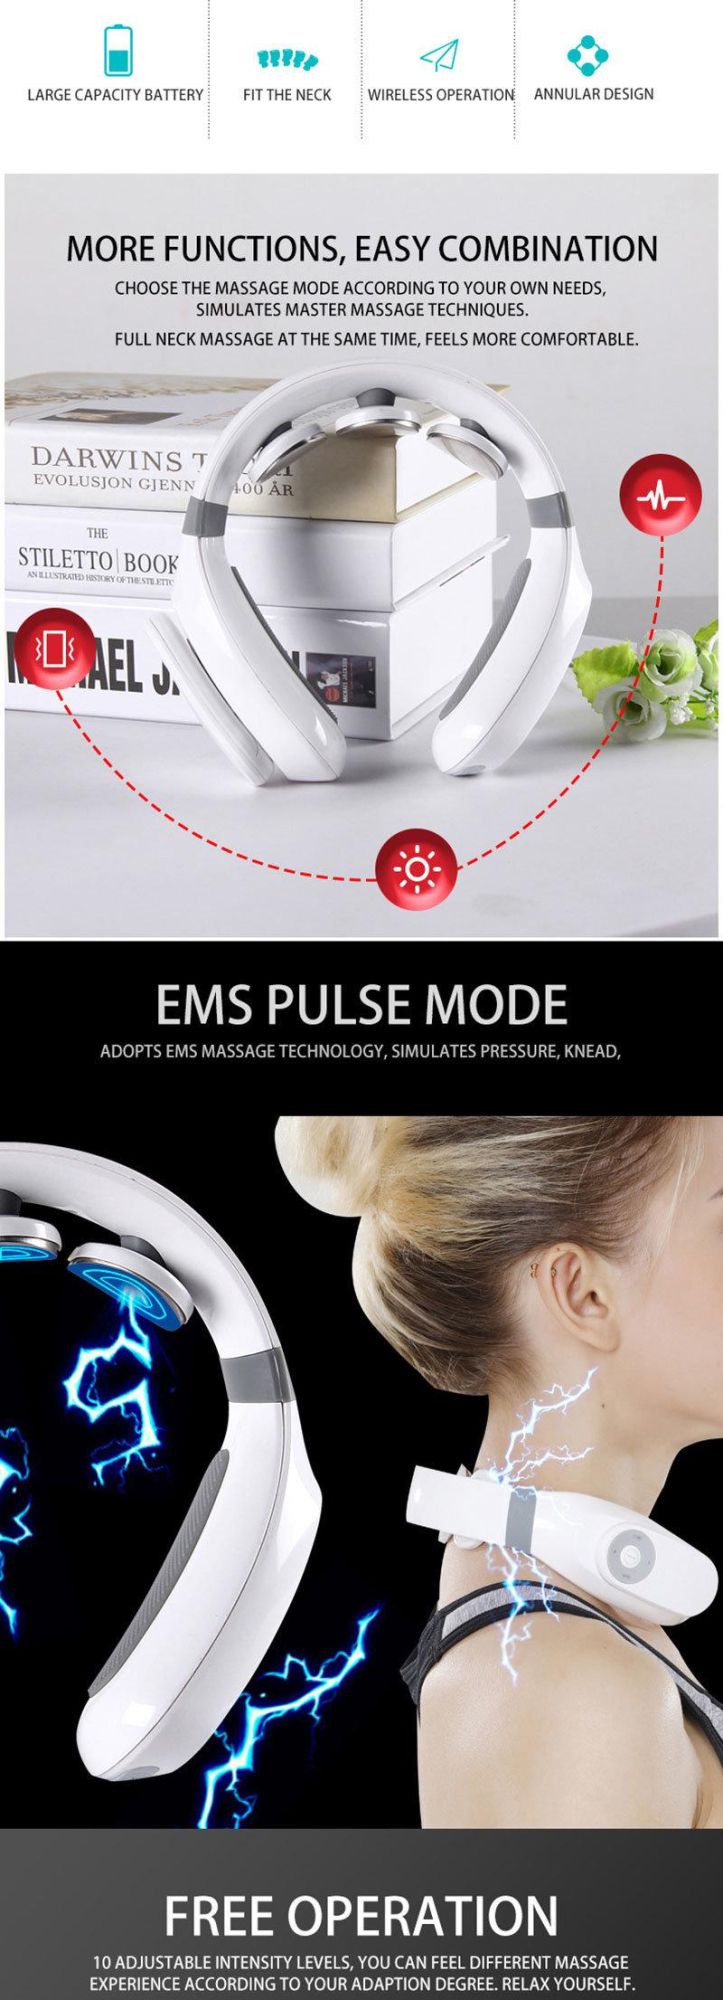 2020 New Wireless Remote Control Mini Electric Neck Massager